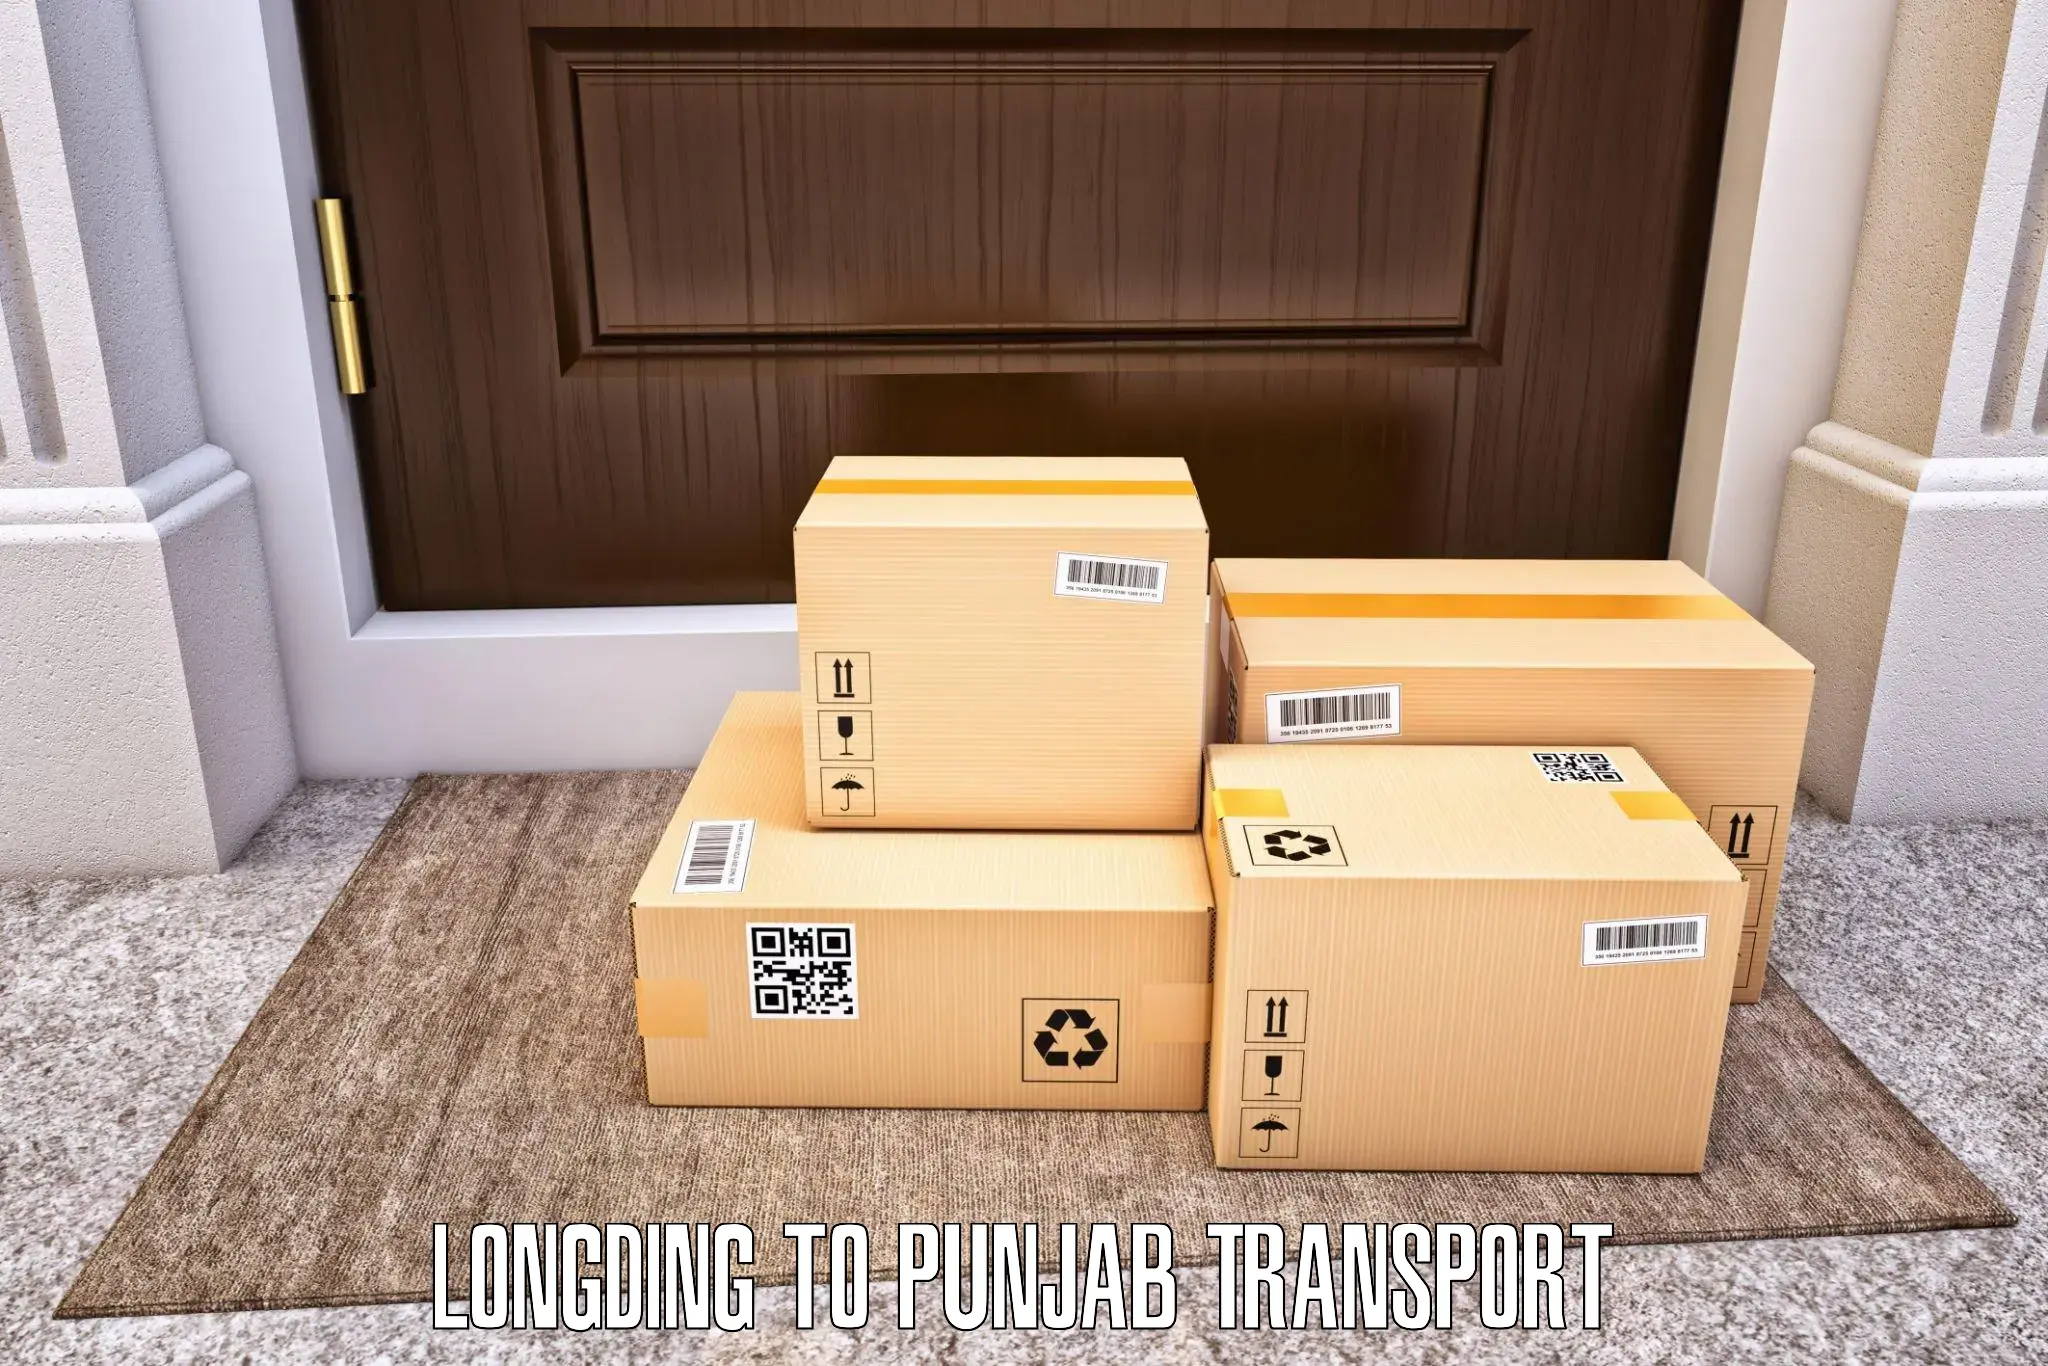 International cargo transportation services Longding to Dinanagar